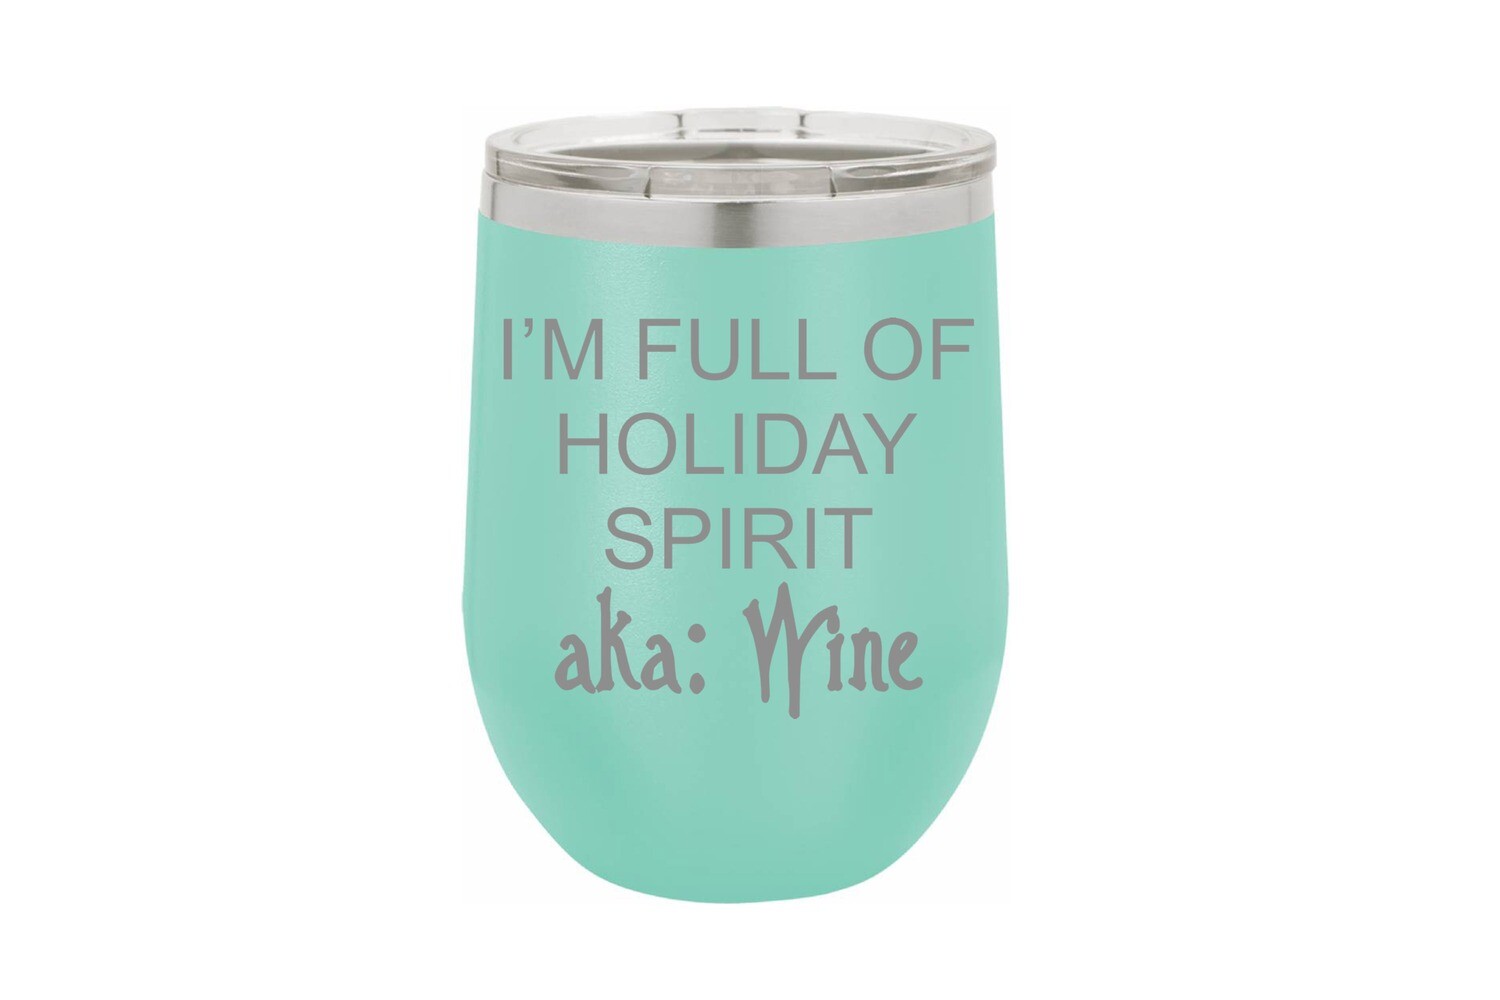 I'm Full of Holiday Spirit aka Wine Insulated Tumbler 12 oz